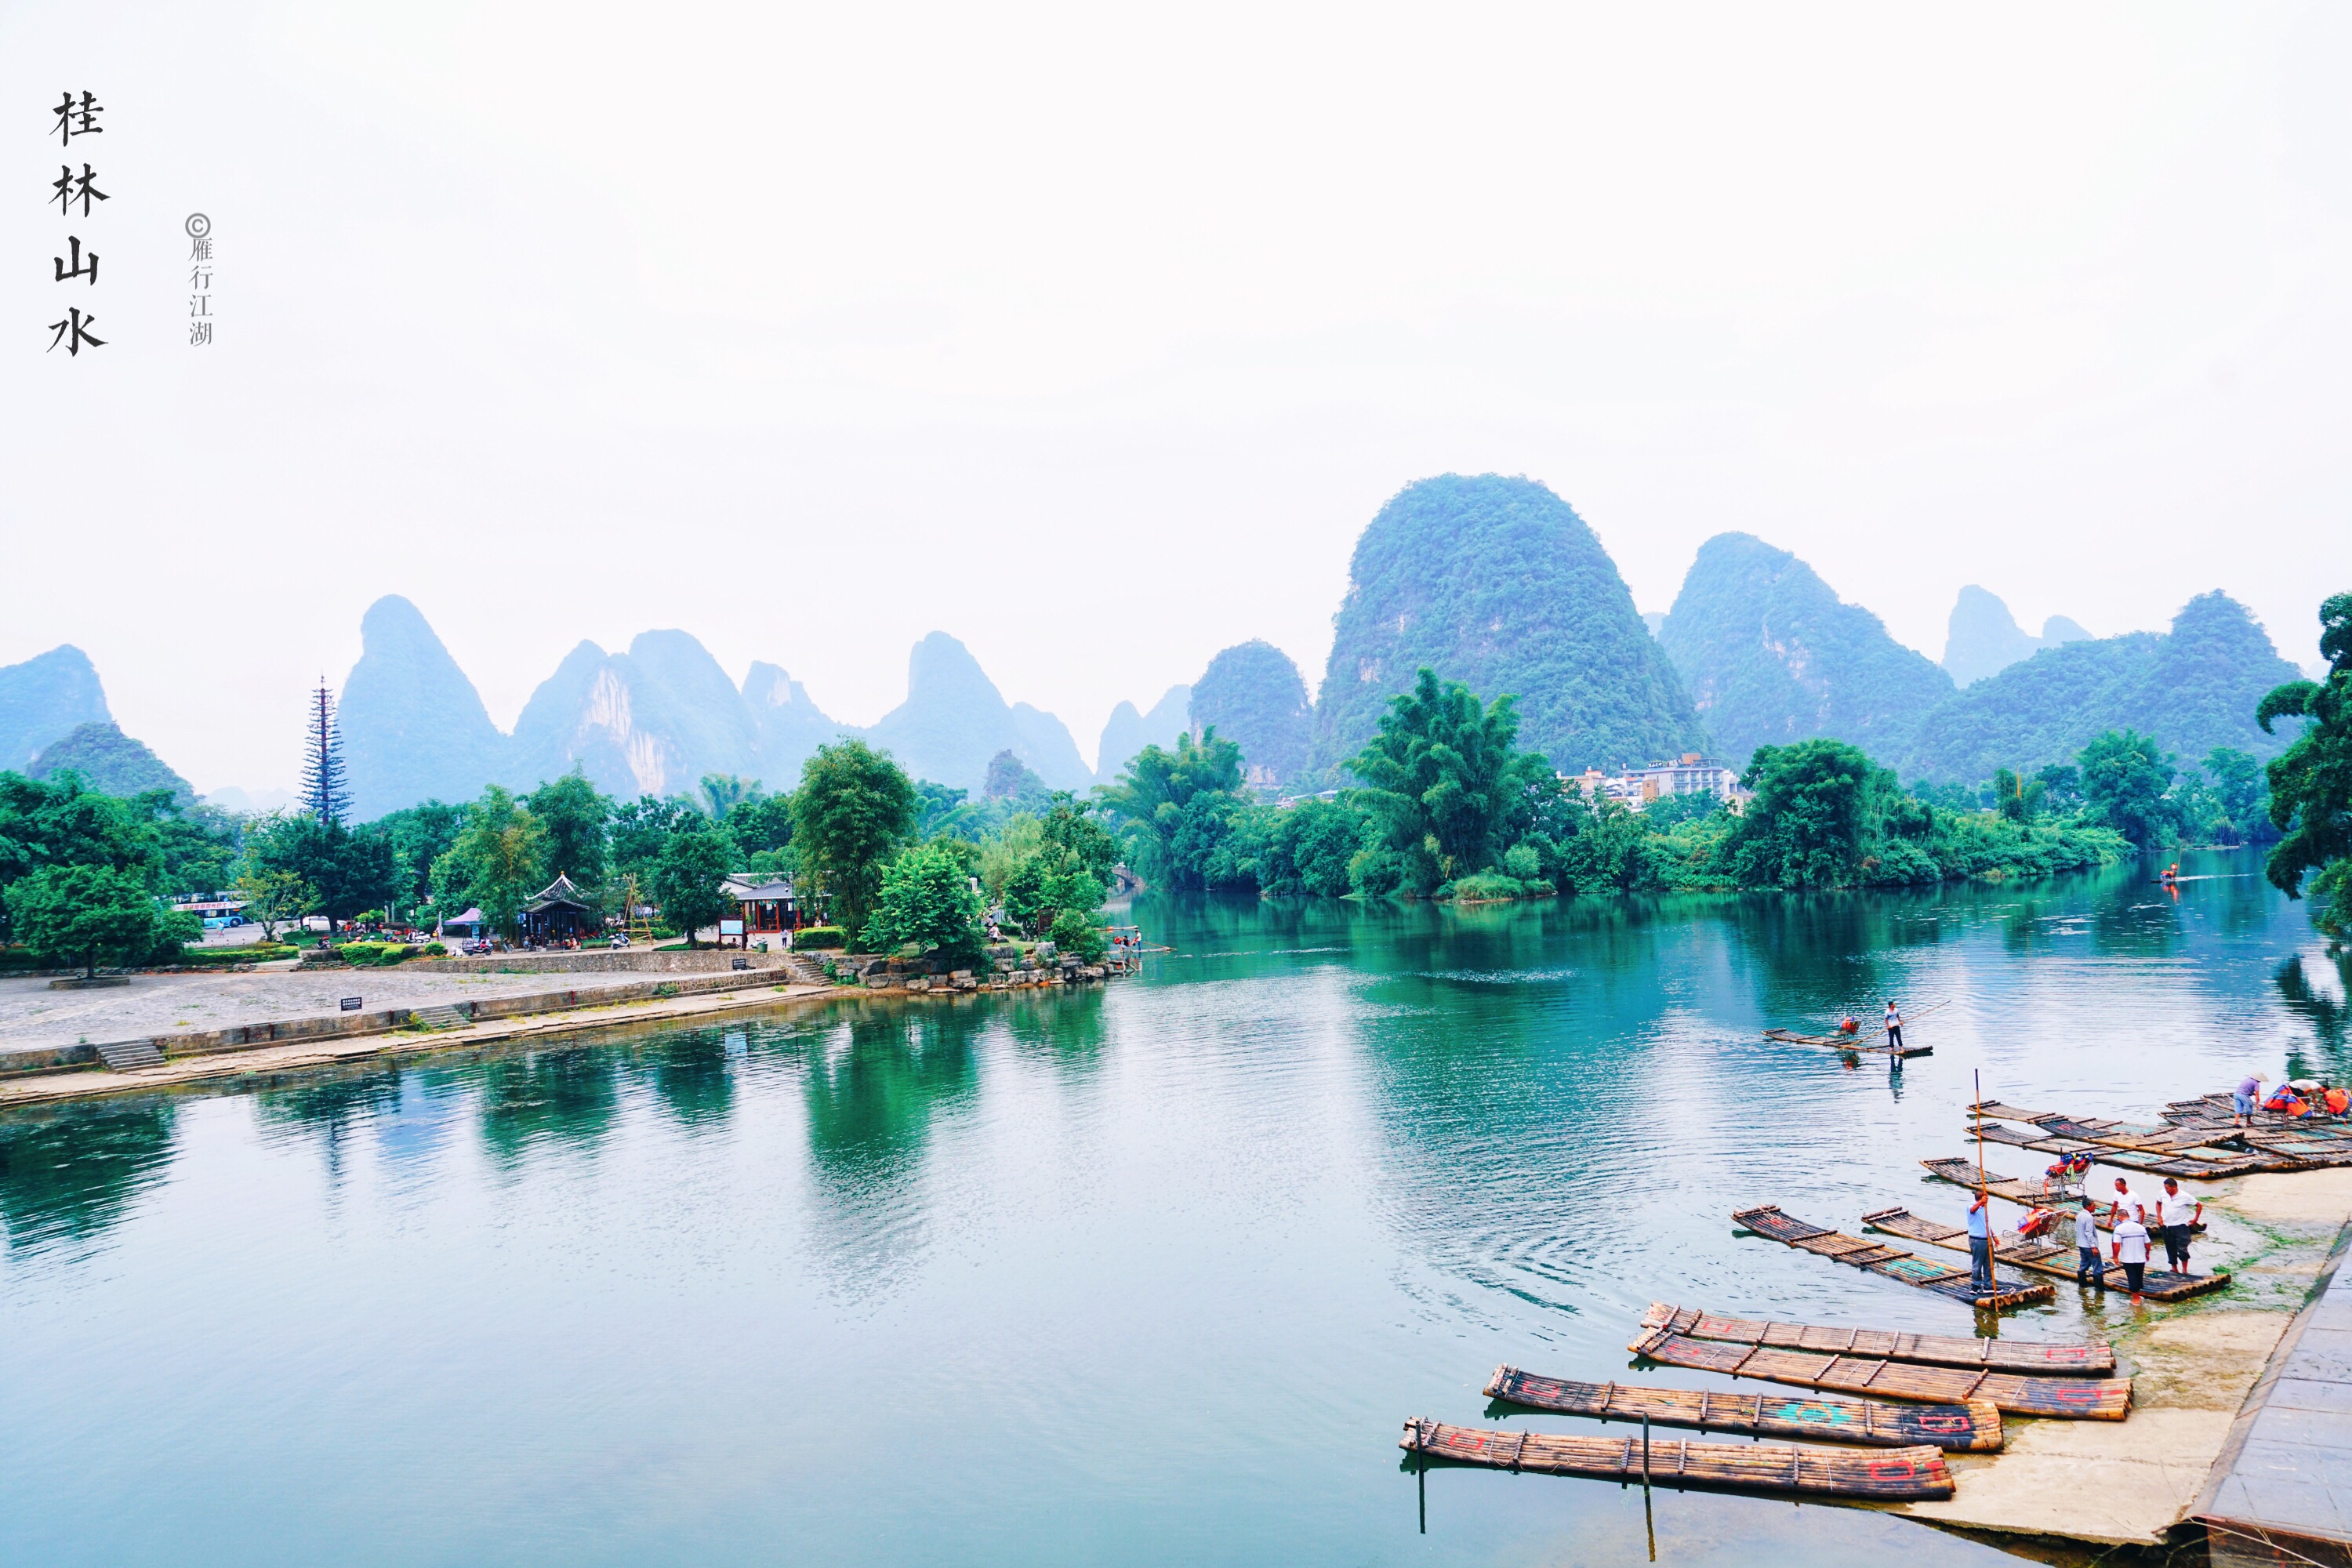 桂林最美的风景在这里,景点随手一拍就是一张明信片